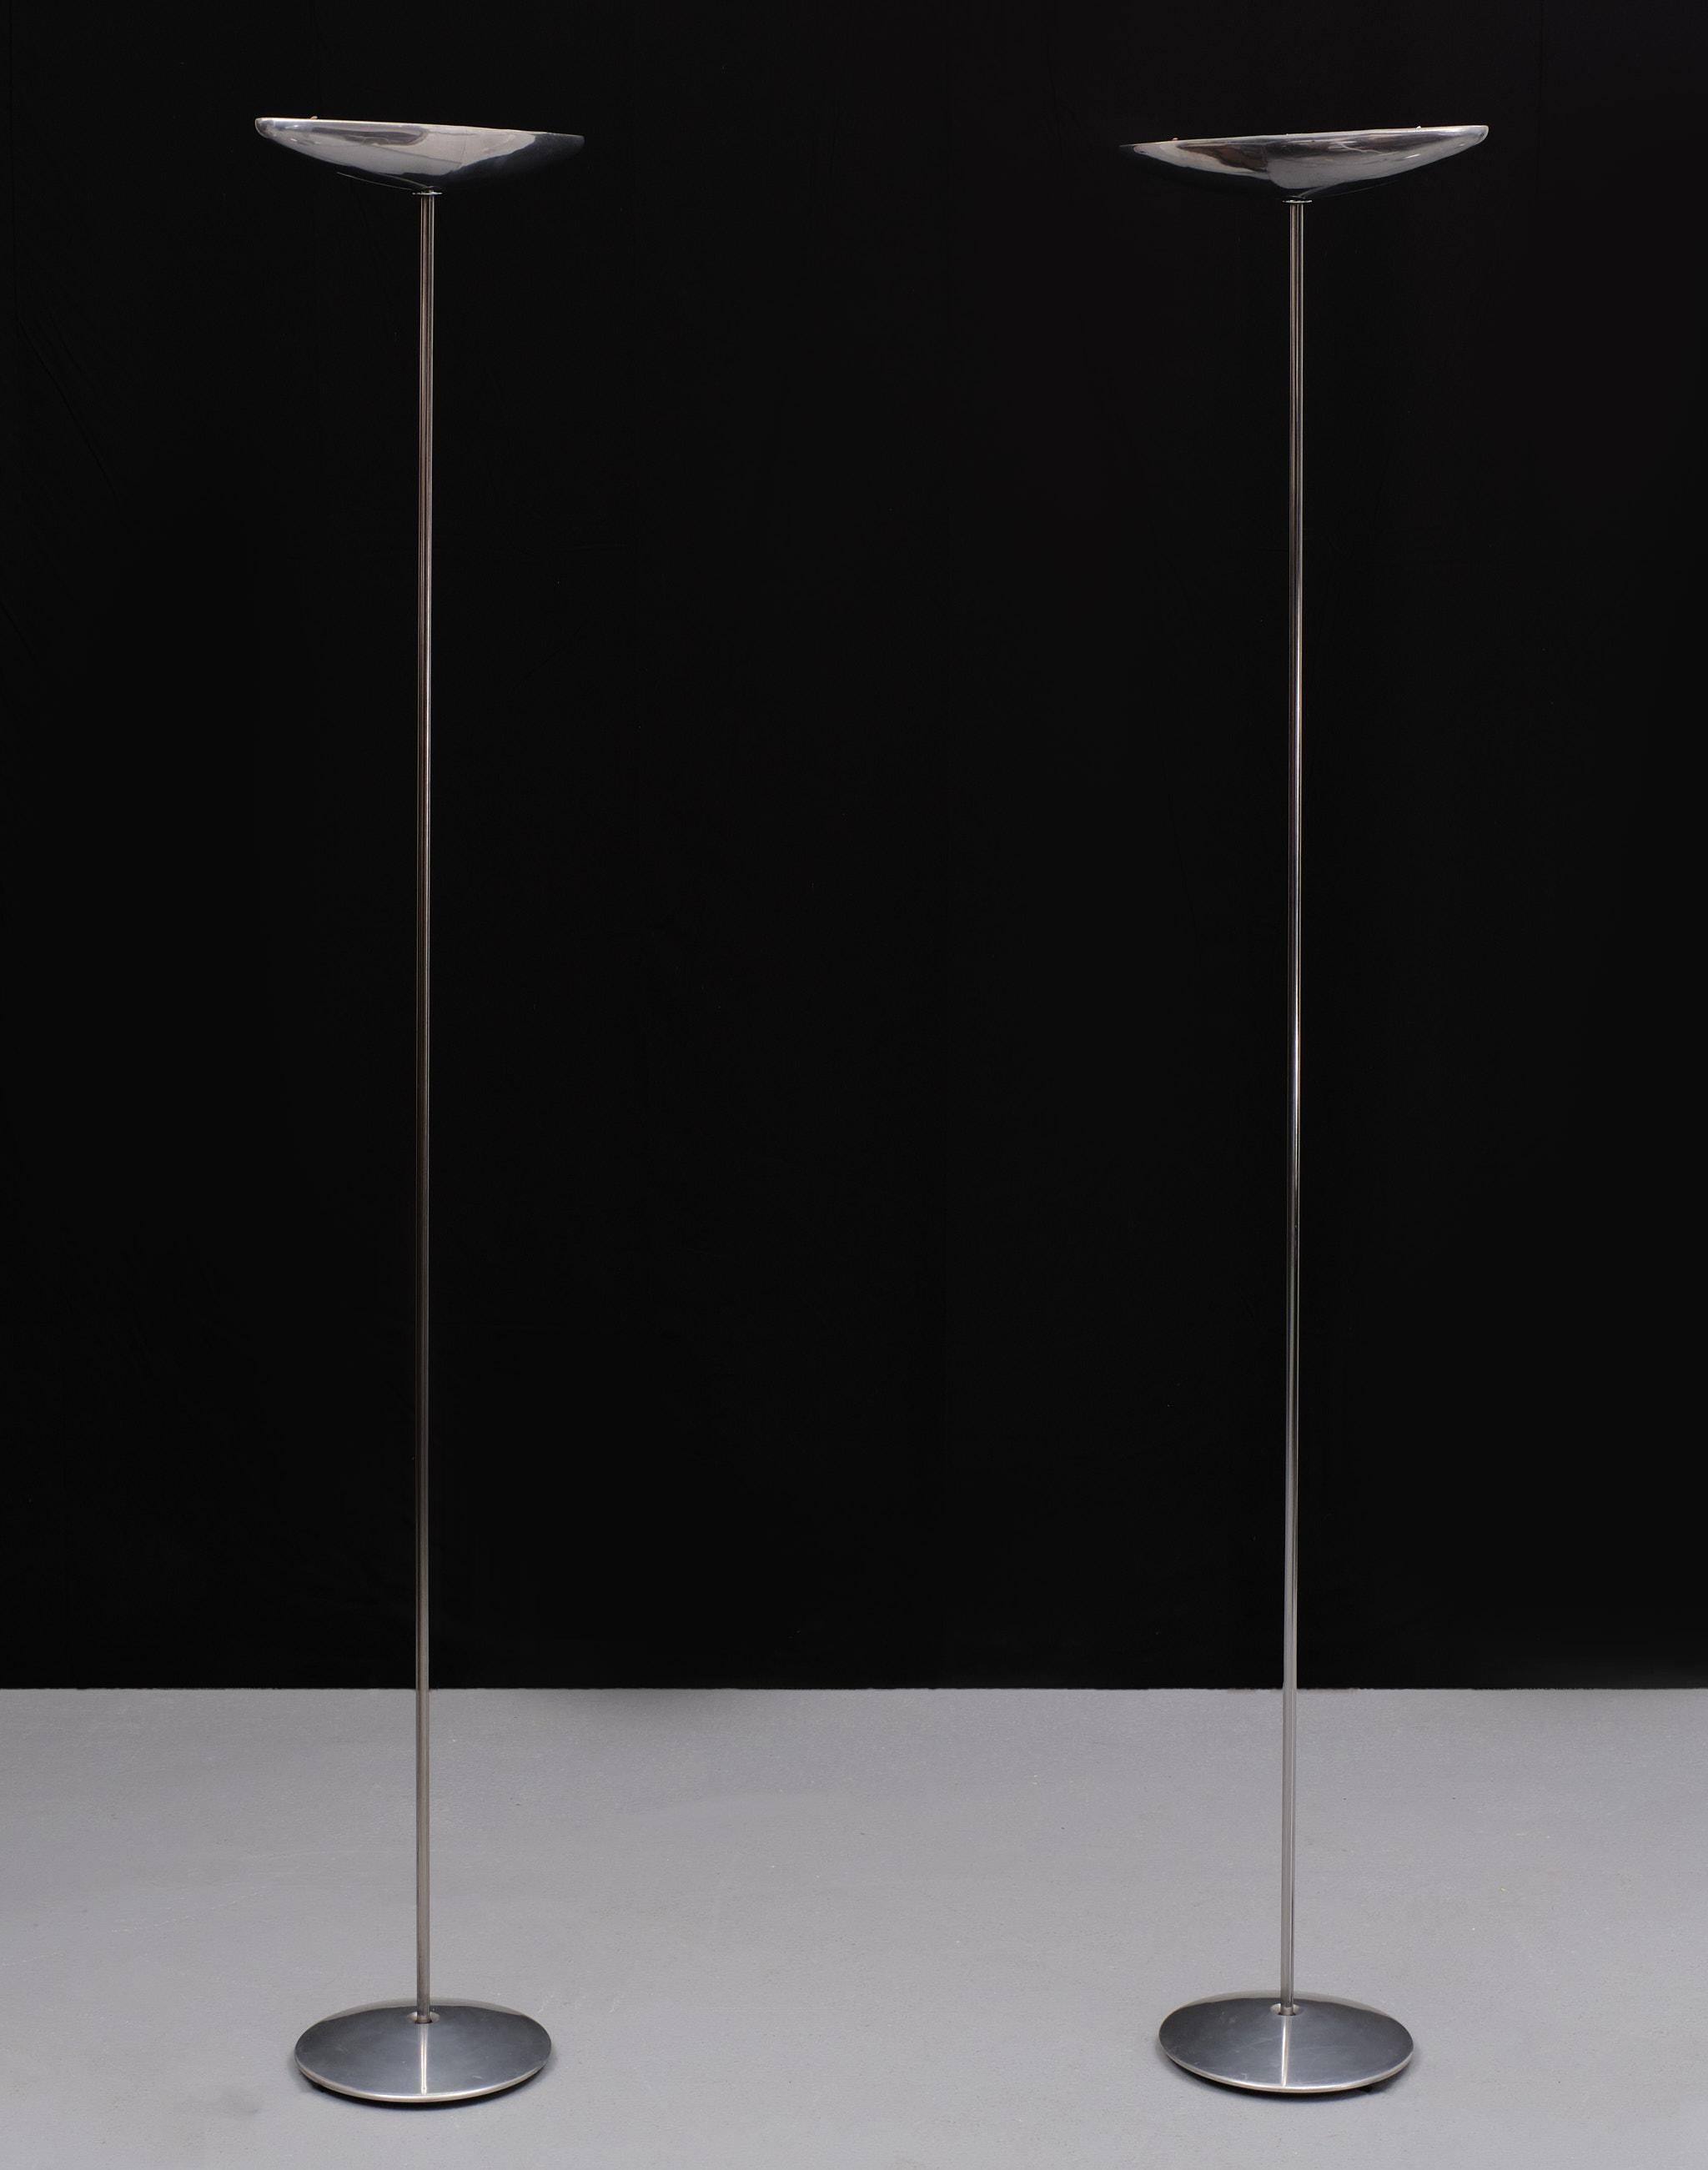 Ensemble de lampadaires Olympia Pie par Jorge Pensi pour B Lux, années 1980 .Espagne  Aluminium moulé.
Halogène .Nouveaux gradateurs . Magnifique Design/One Modern . 